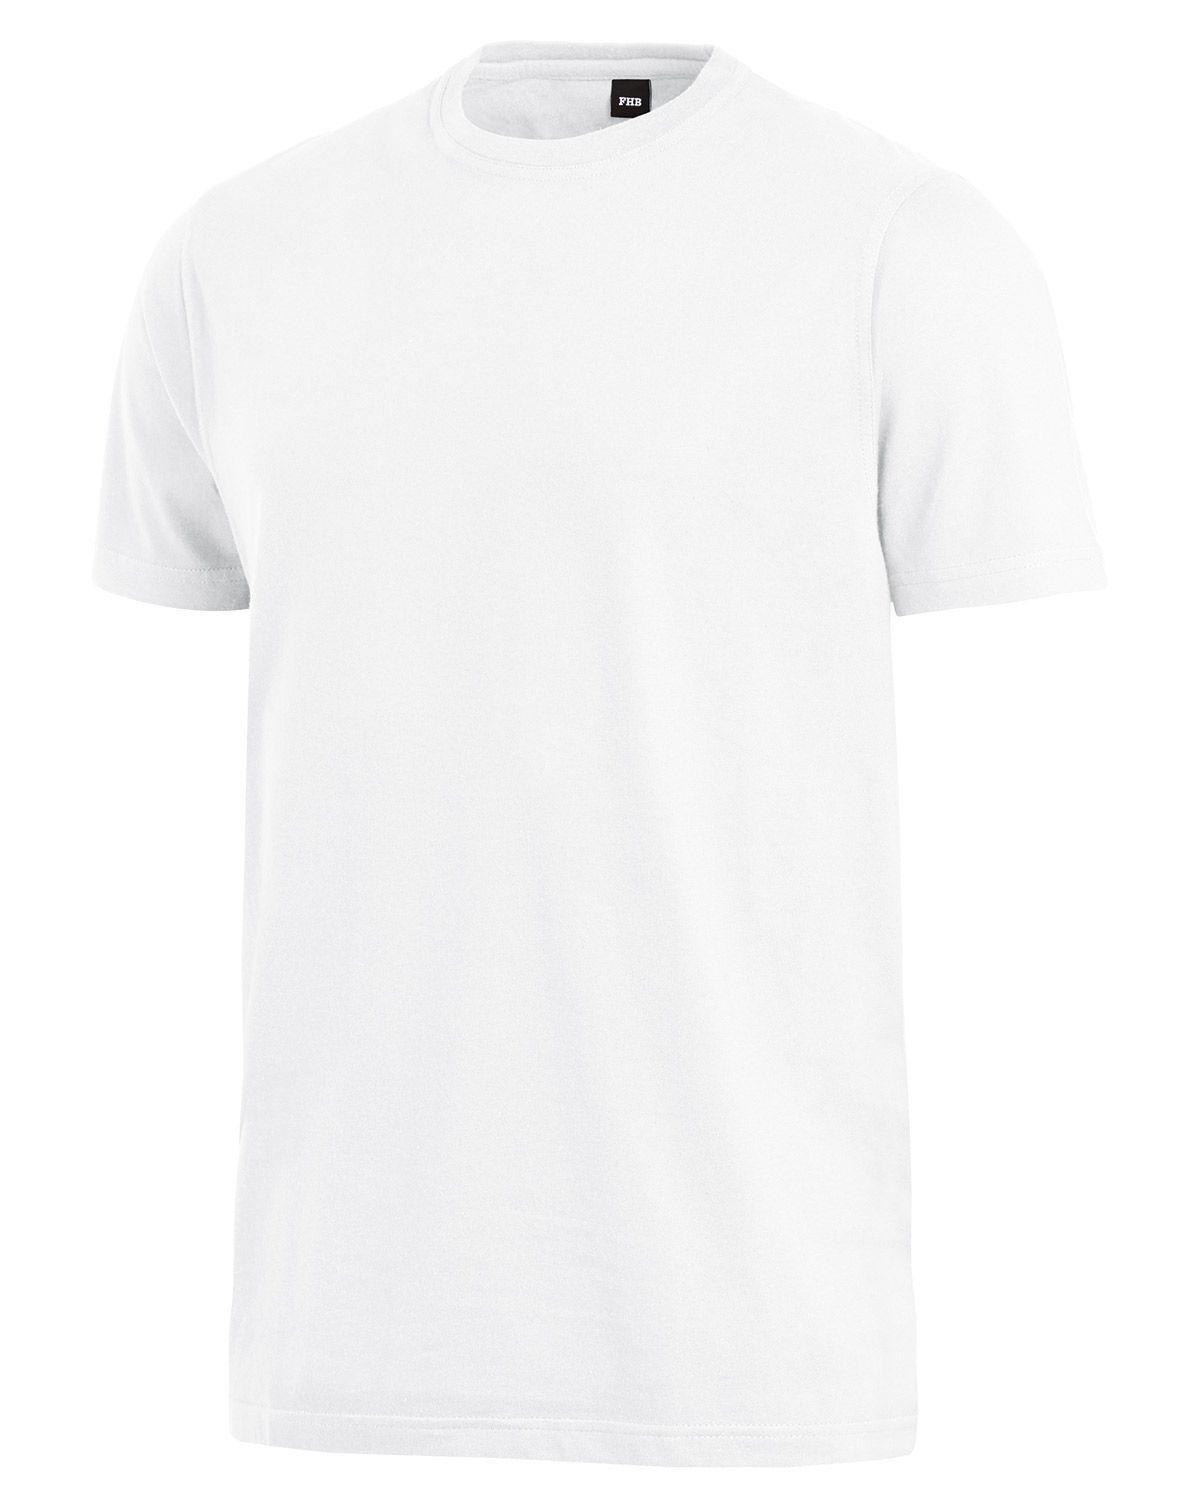 FHB T-Shirt - Jens (Hvid, S)